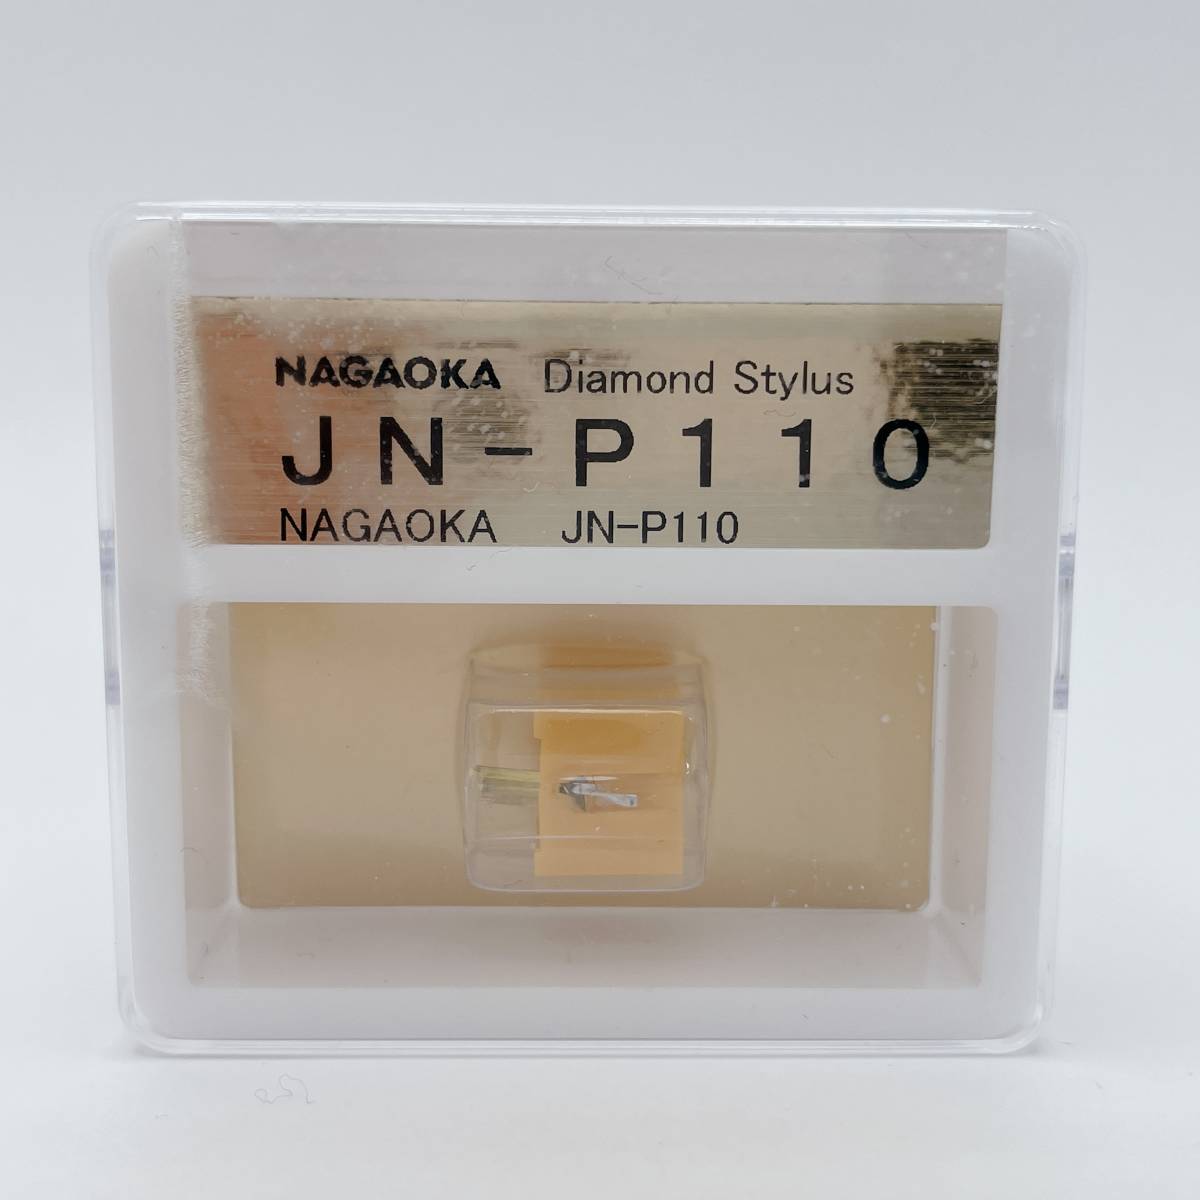 NAGAOKA ステレオカートリッジ 交換針 JN-P110ナガオカ レコード針 (I0451)の画像1